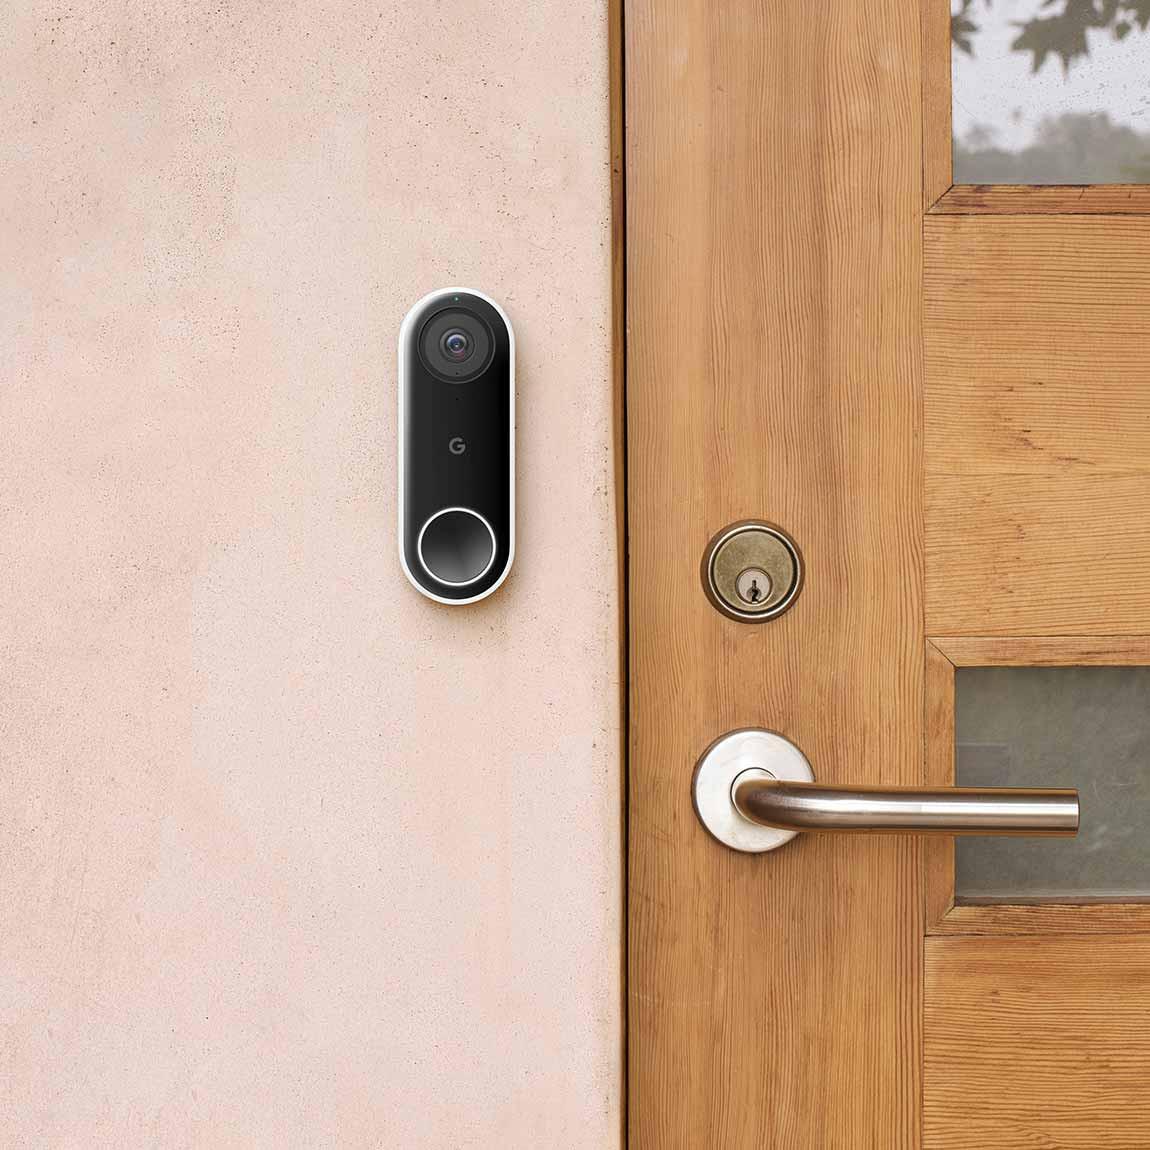 Google Nest Doorbell (Mit Kabel) - smarte Türklingel an der Wand neben hölzerner Haustür